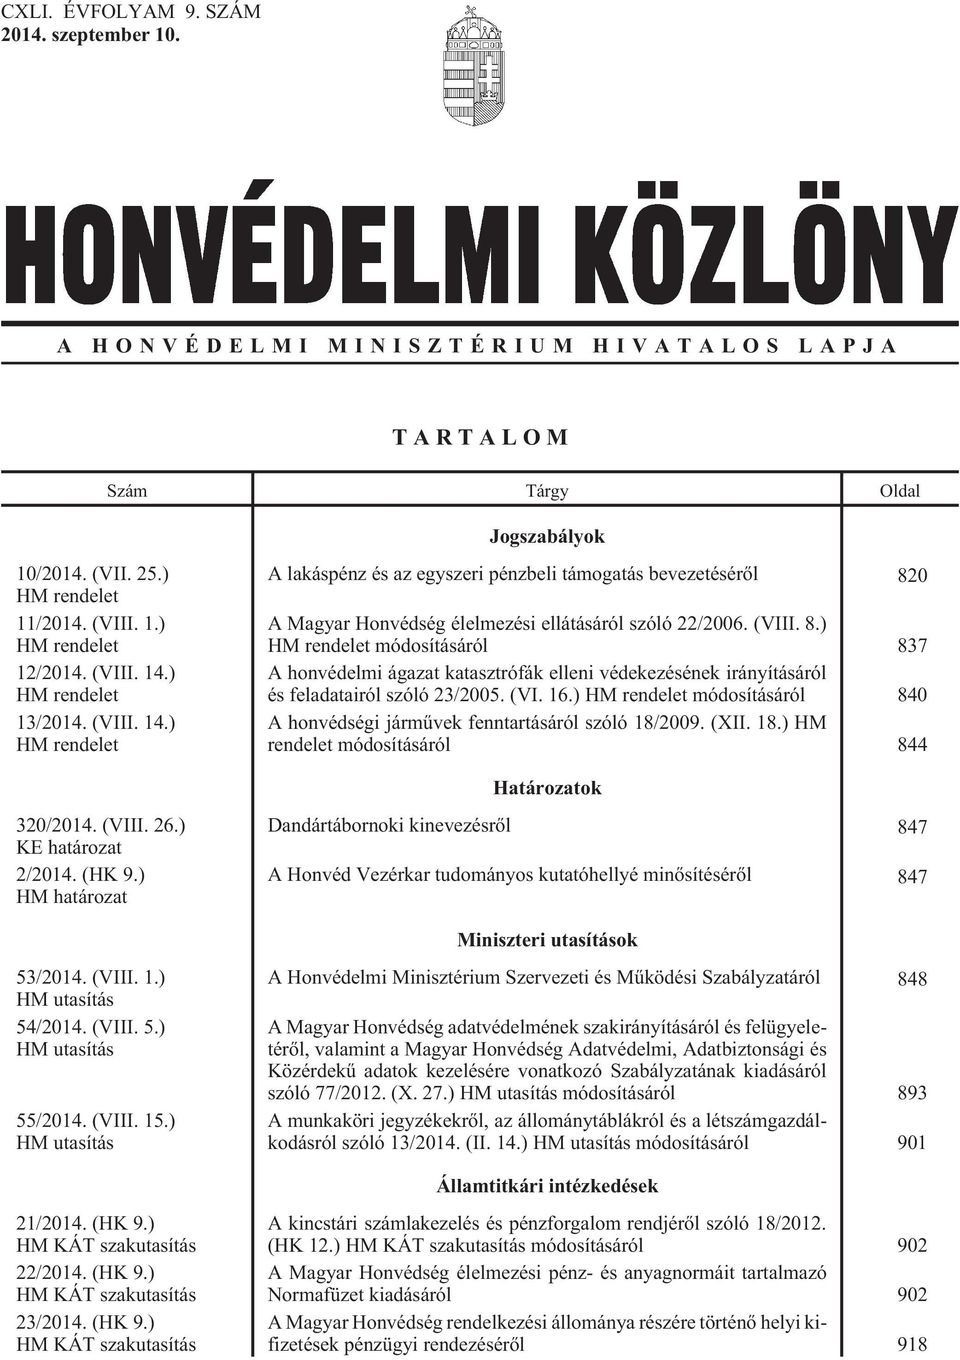 0 A Magyar Honvédség élelmezési ellátásáról szóló 22/2006. (VIII. 8.) HM rendelet módosításáról 837 A honvédelmi ágazat katasztrófák elleni védekezésének irányításáról és feladatairól szóló 23/2005.